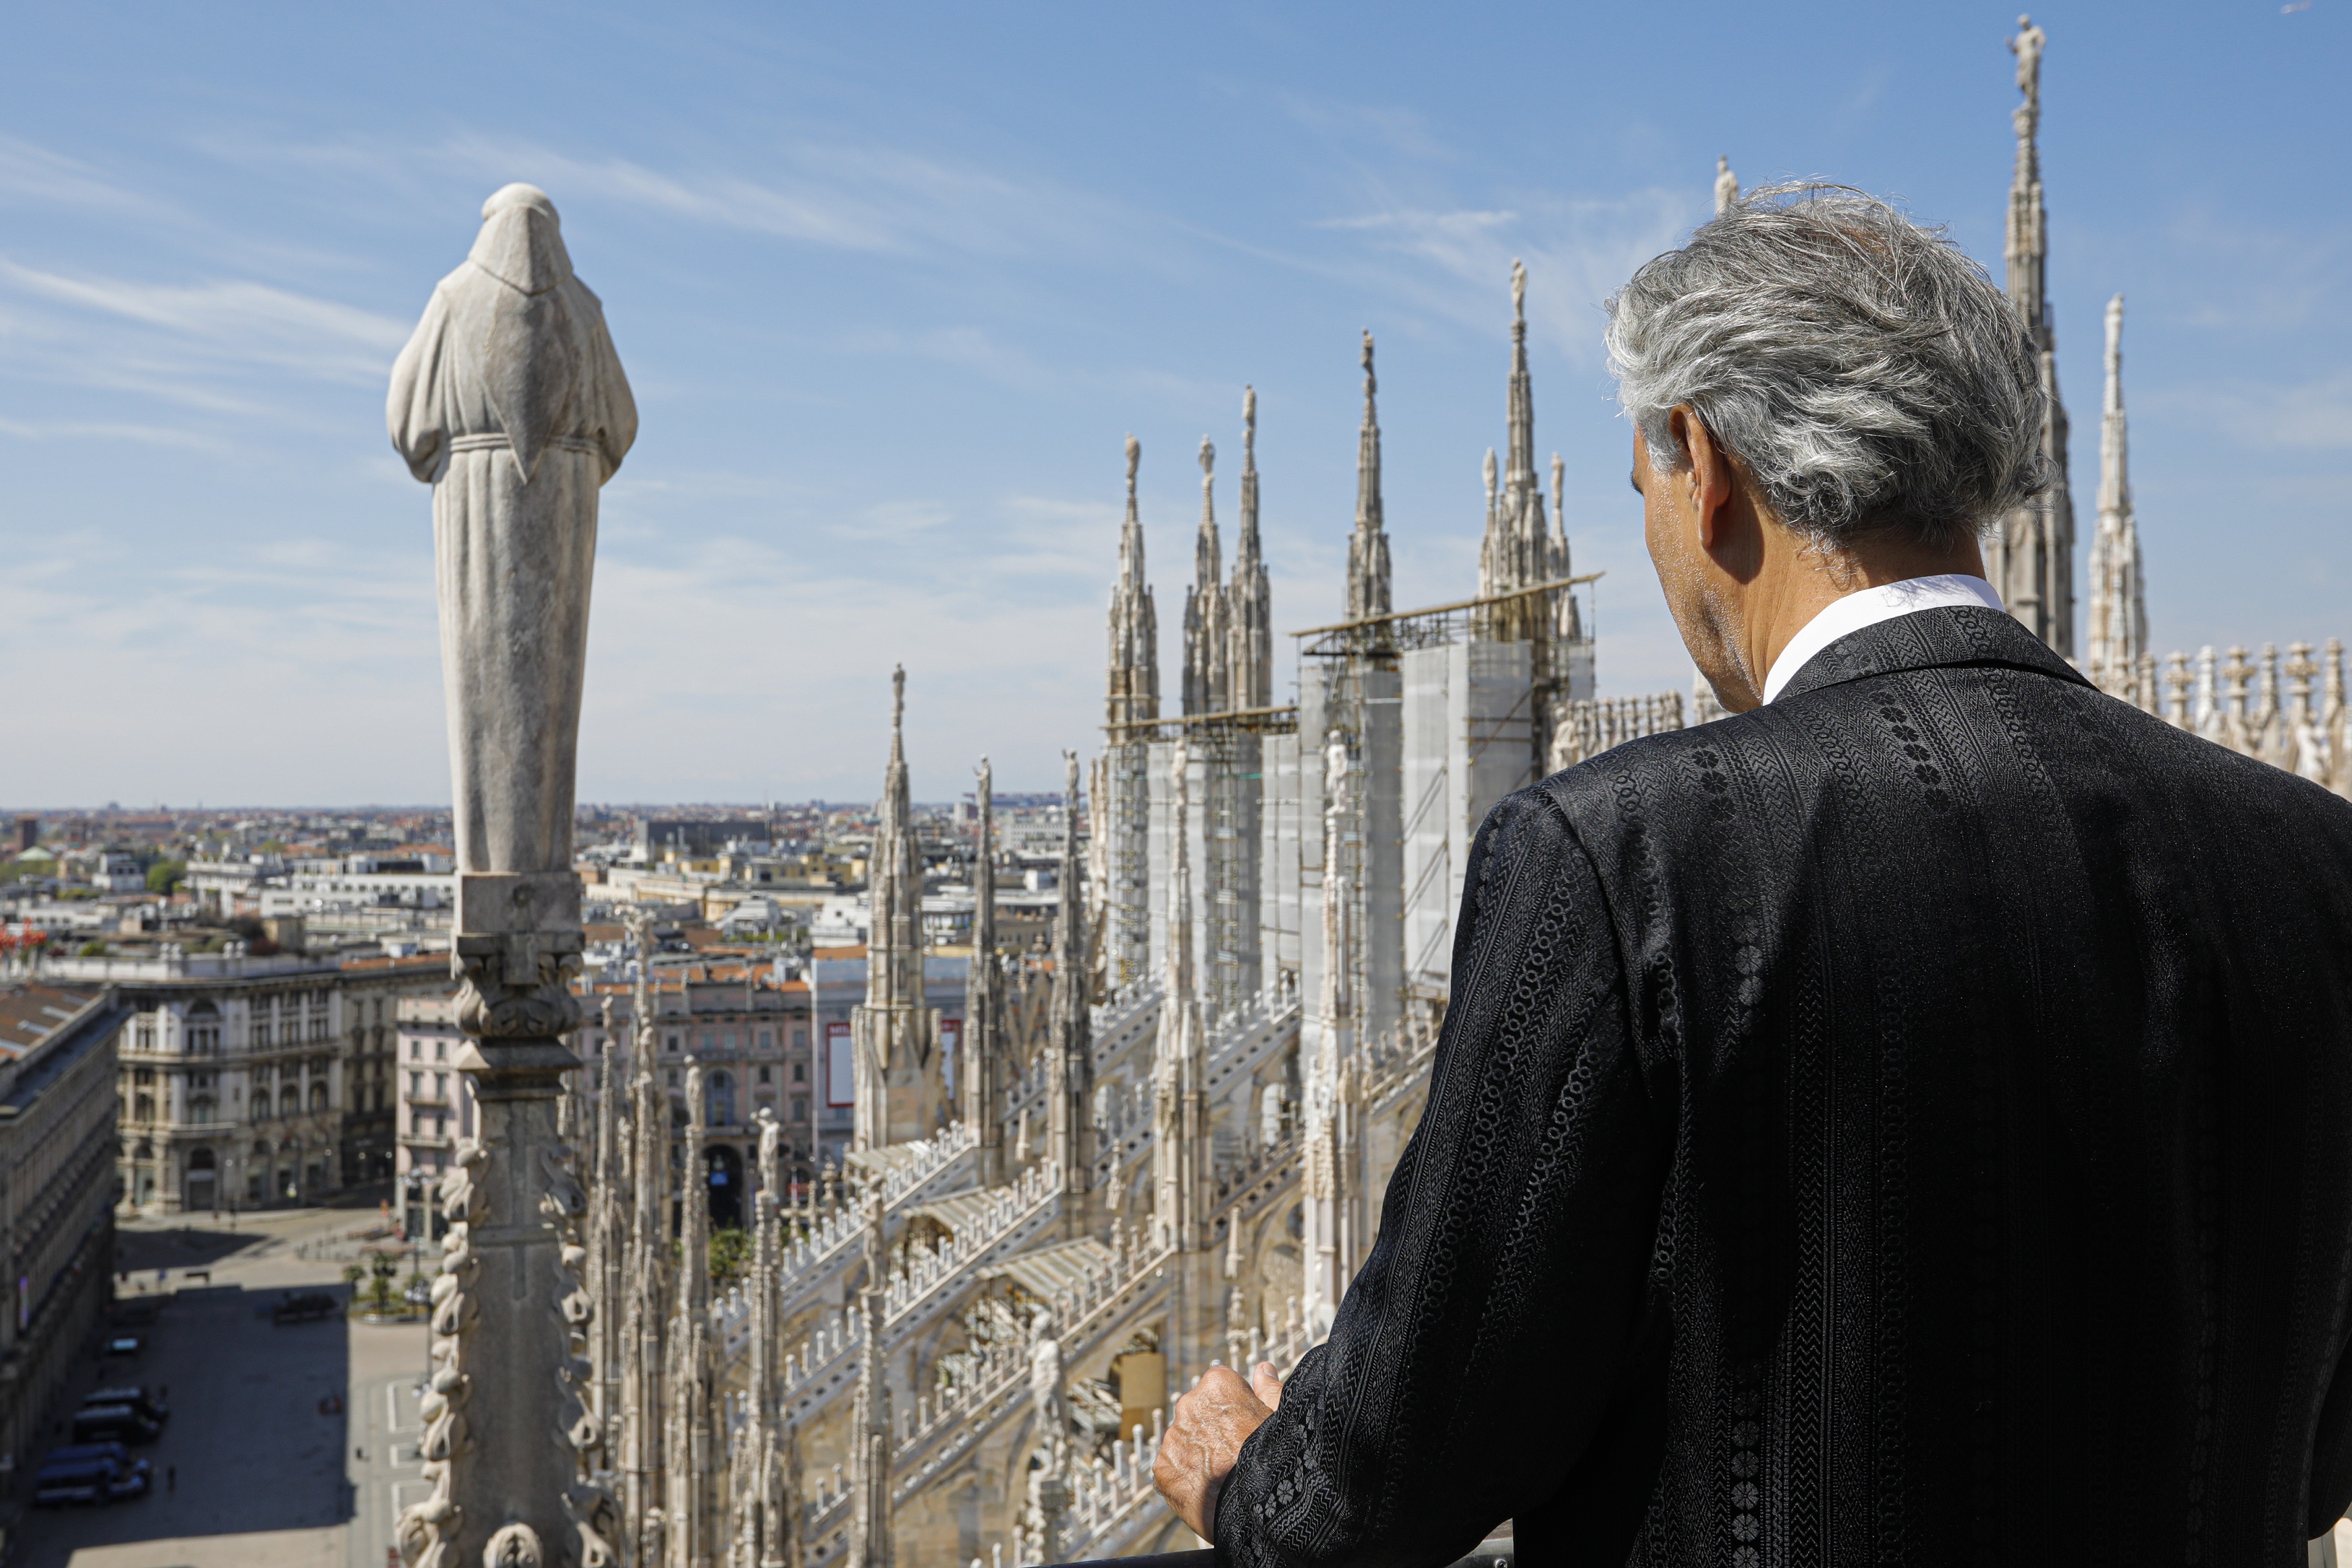 Bocelli in Duomo: “CUSTODIRO’ L’EMOZIONE DI QUESTA ESPERIENZA”